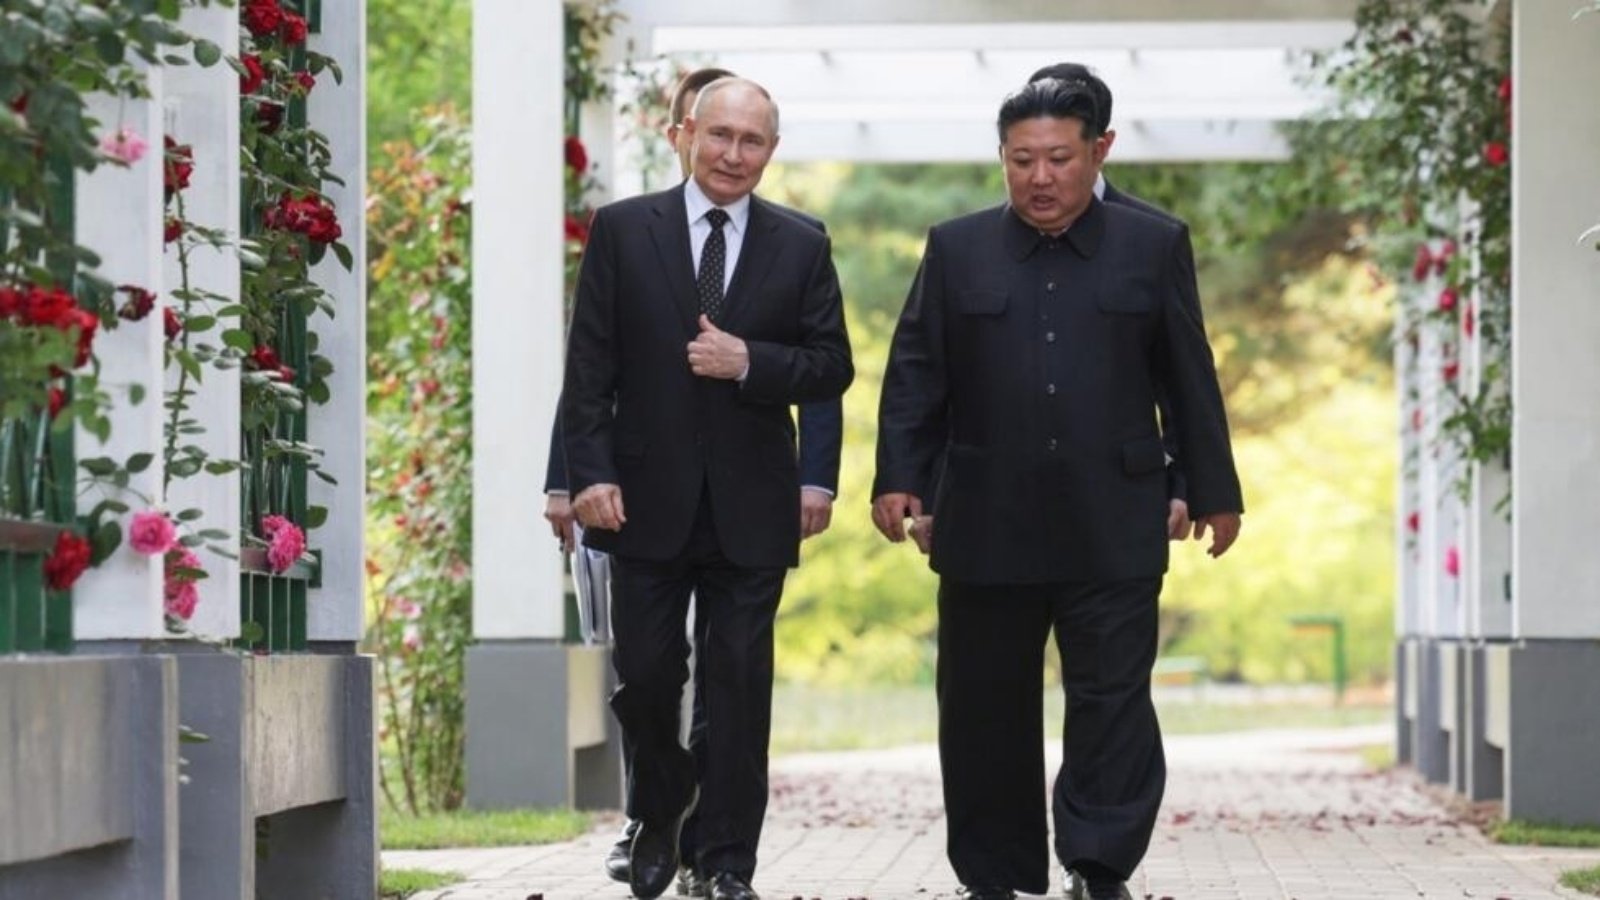 العلاقات بين موسكو وبيونغ يانغ نمت بسرعة في السنوات الأخيرة العلاقات بين موسكو وبيونغ يانغ نمت بسرعة في السنوات الأخيرة 